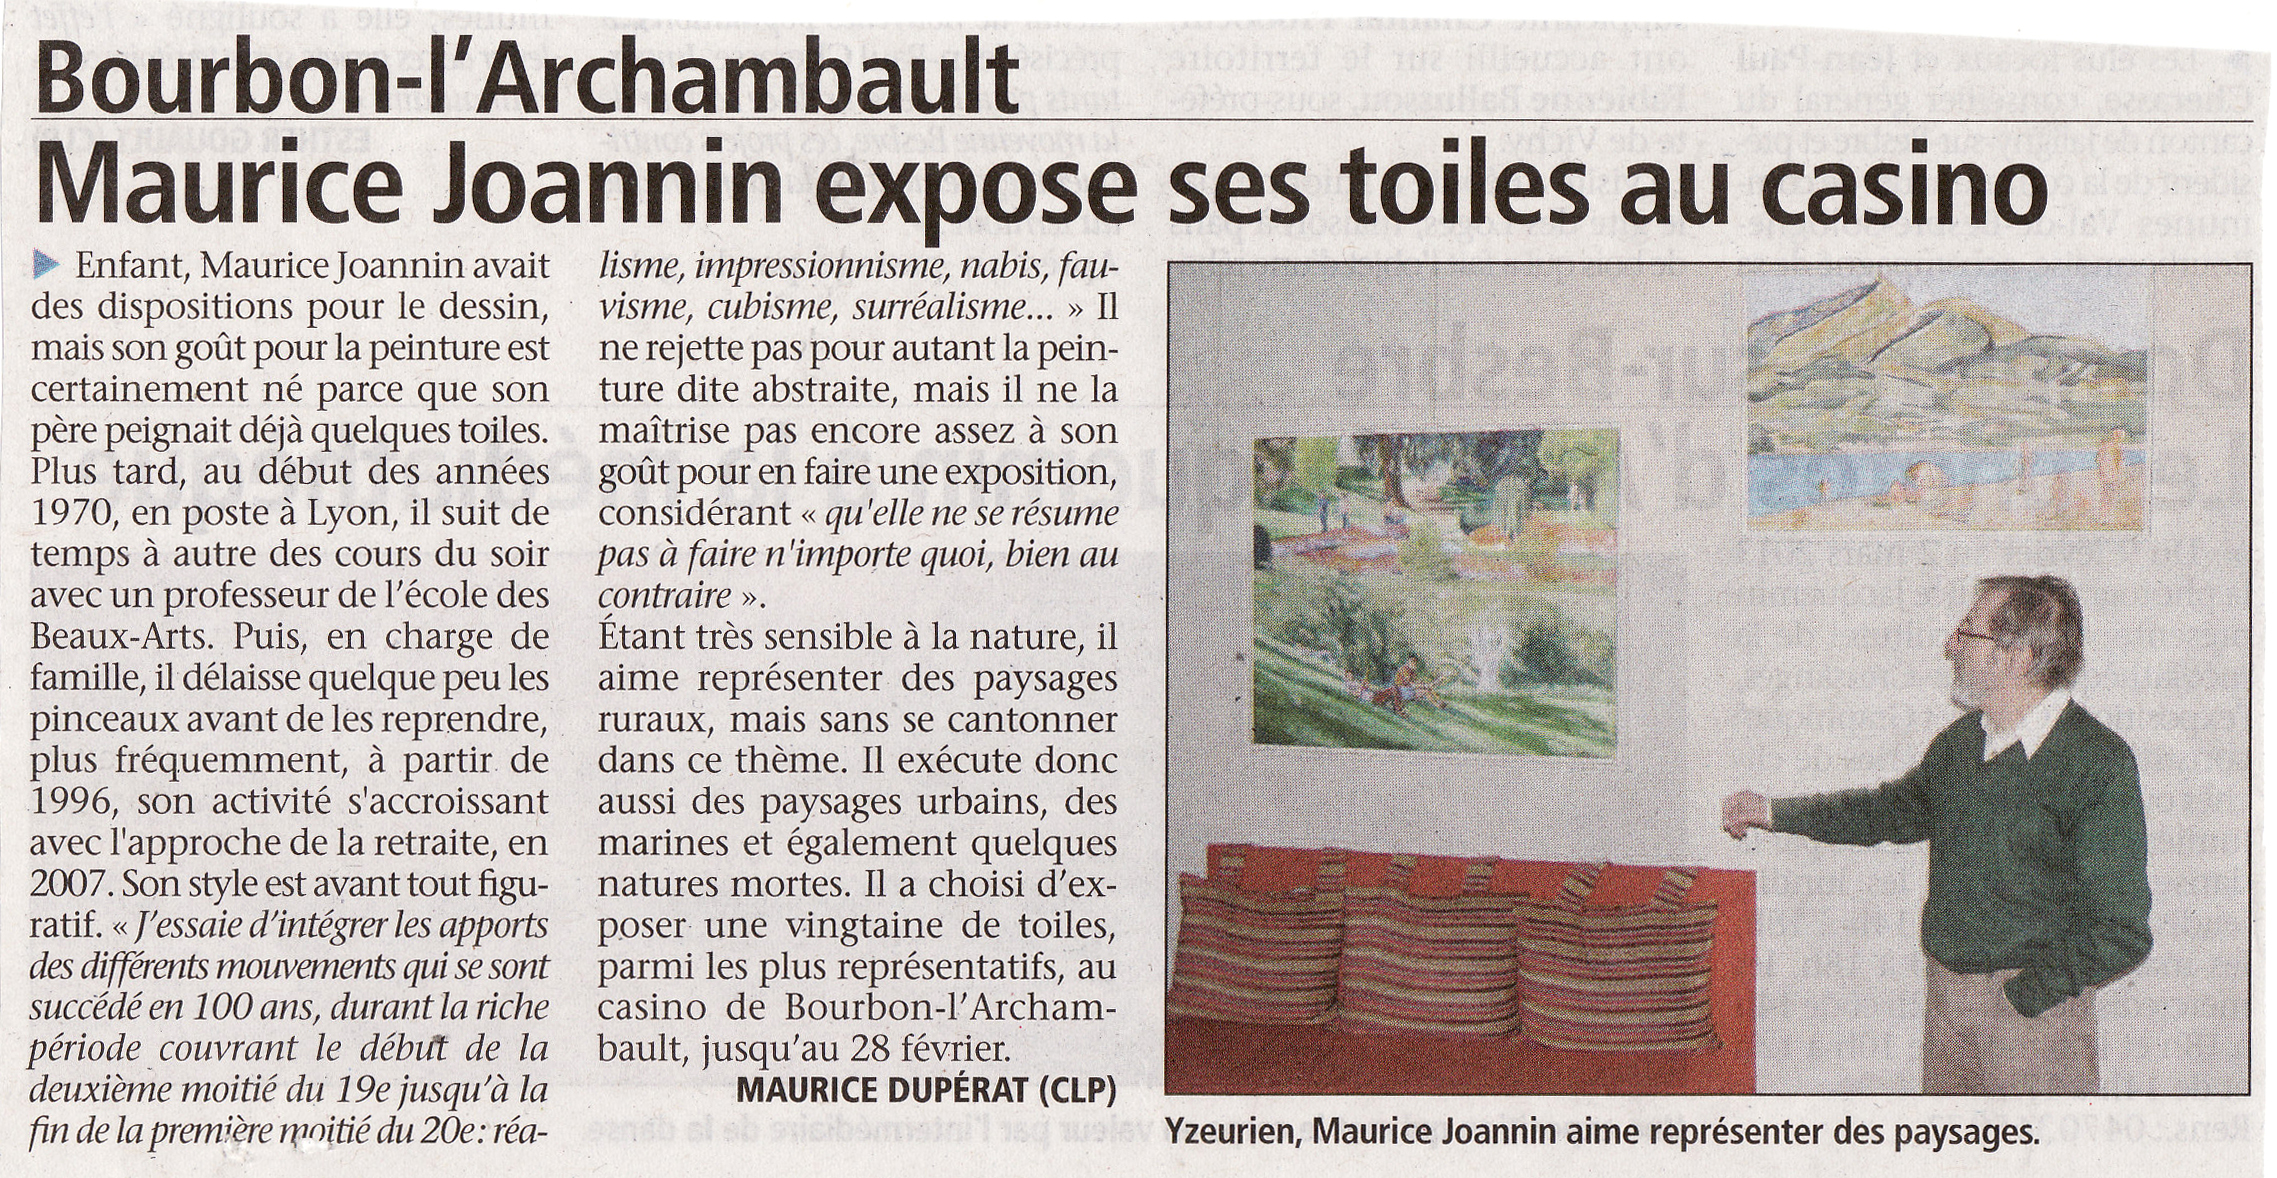 Exposition de Maurice Joannin au casino de Bourbon L'Archambault du 11 février au 28 février 2013